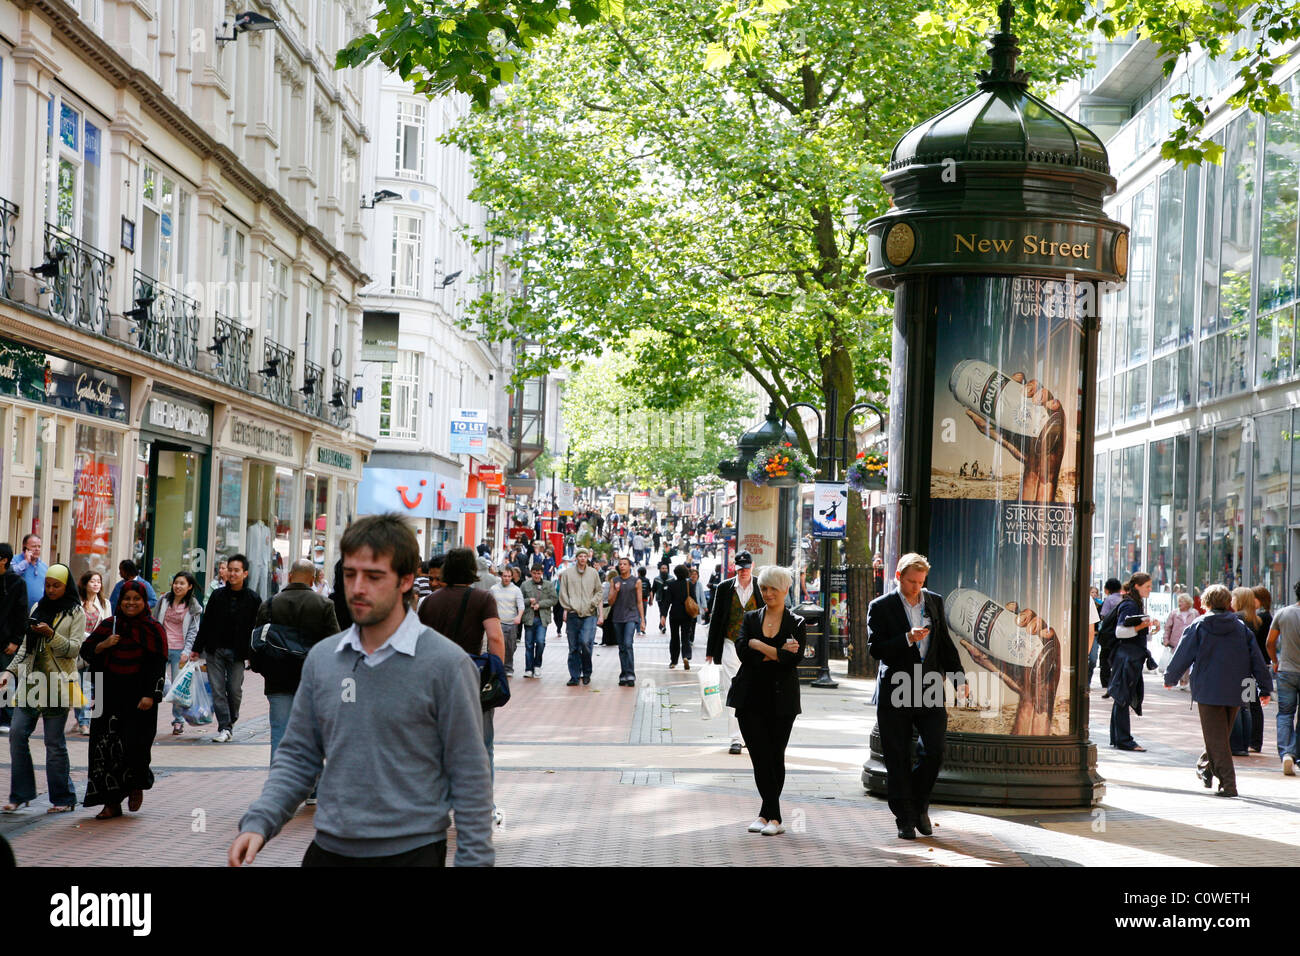 Menschen auf New Street, einer Fußgängerzone mit vielen Geschäften. Birmingham, England, Vereinigtes Königreich. Stockfoto